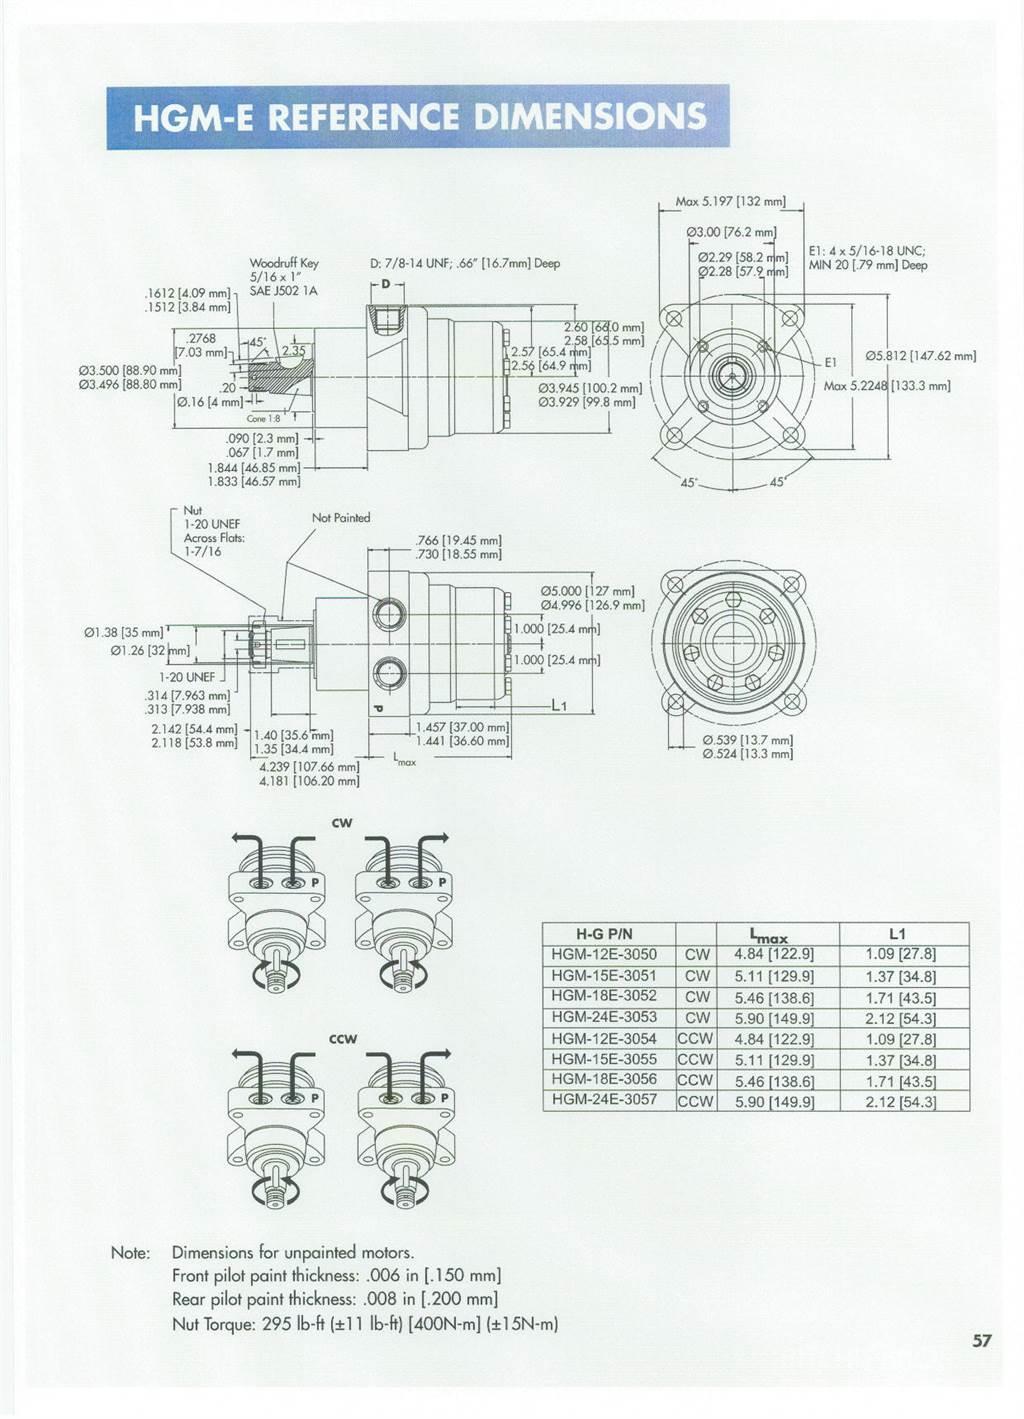  Hydro gear type HGM-15E-3138 Menjači